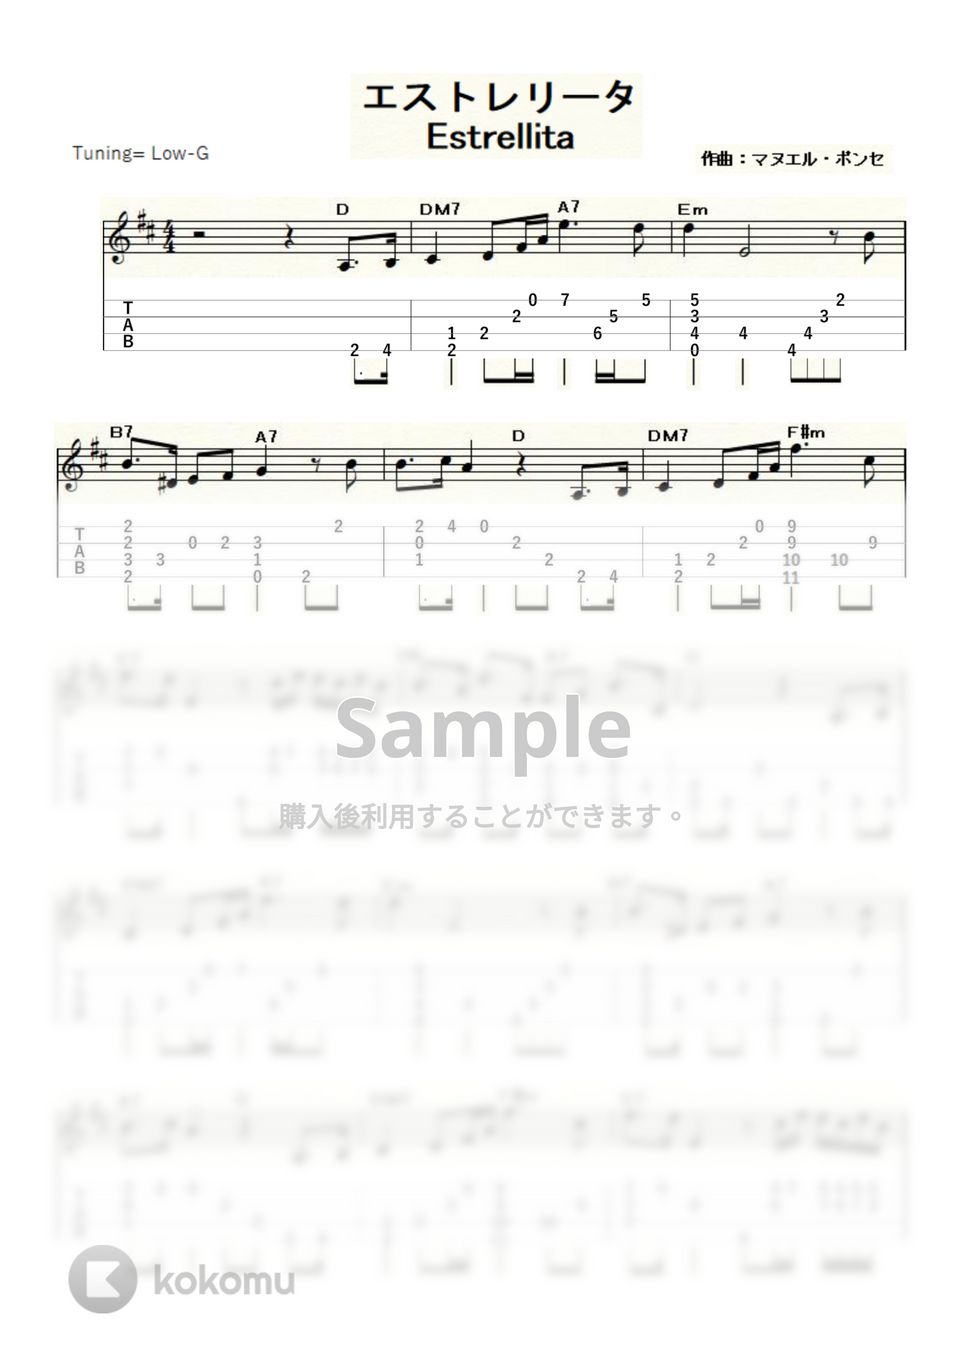 ポンセ - エストレリータ (ｳｸﾚﾚｿﾛ / Low-G / 中級) by ukulelepapa